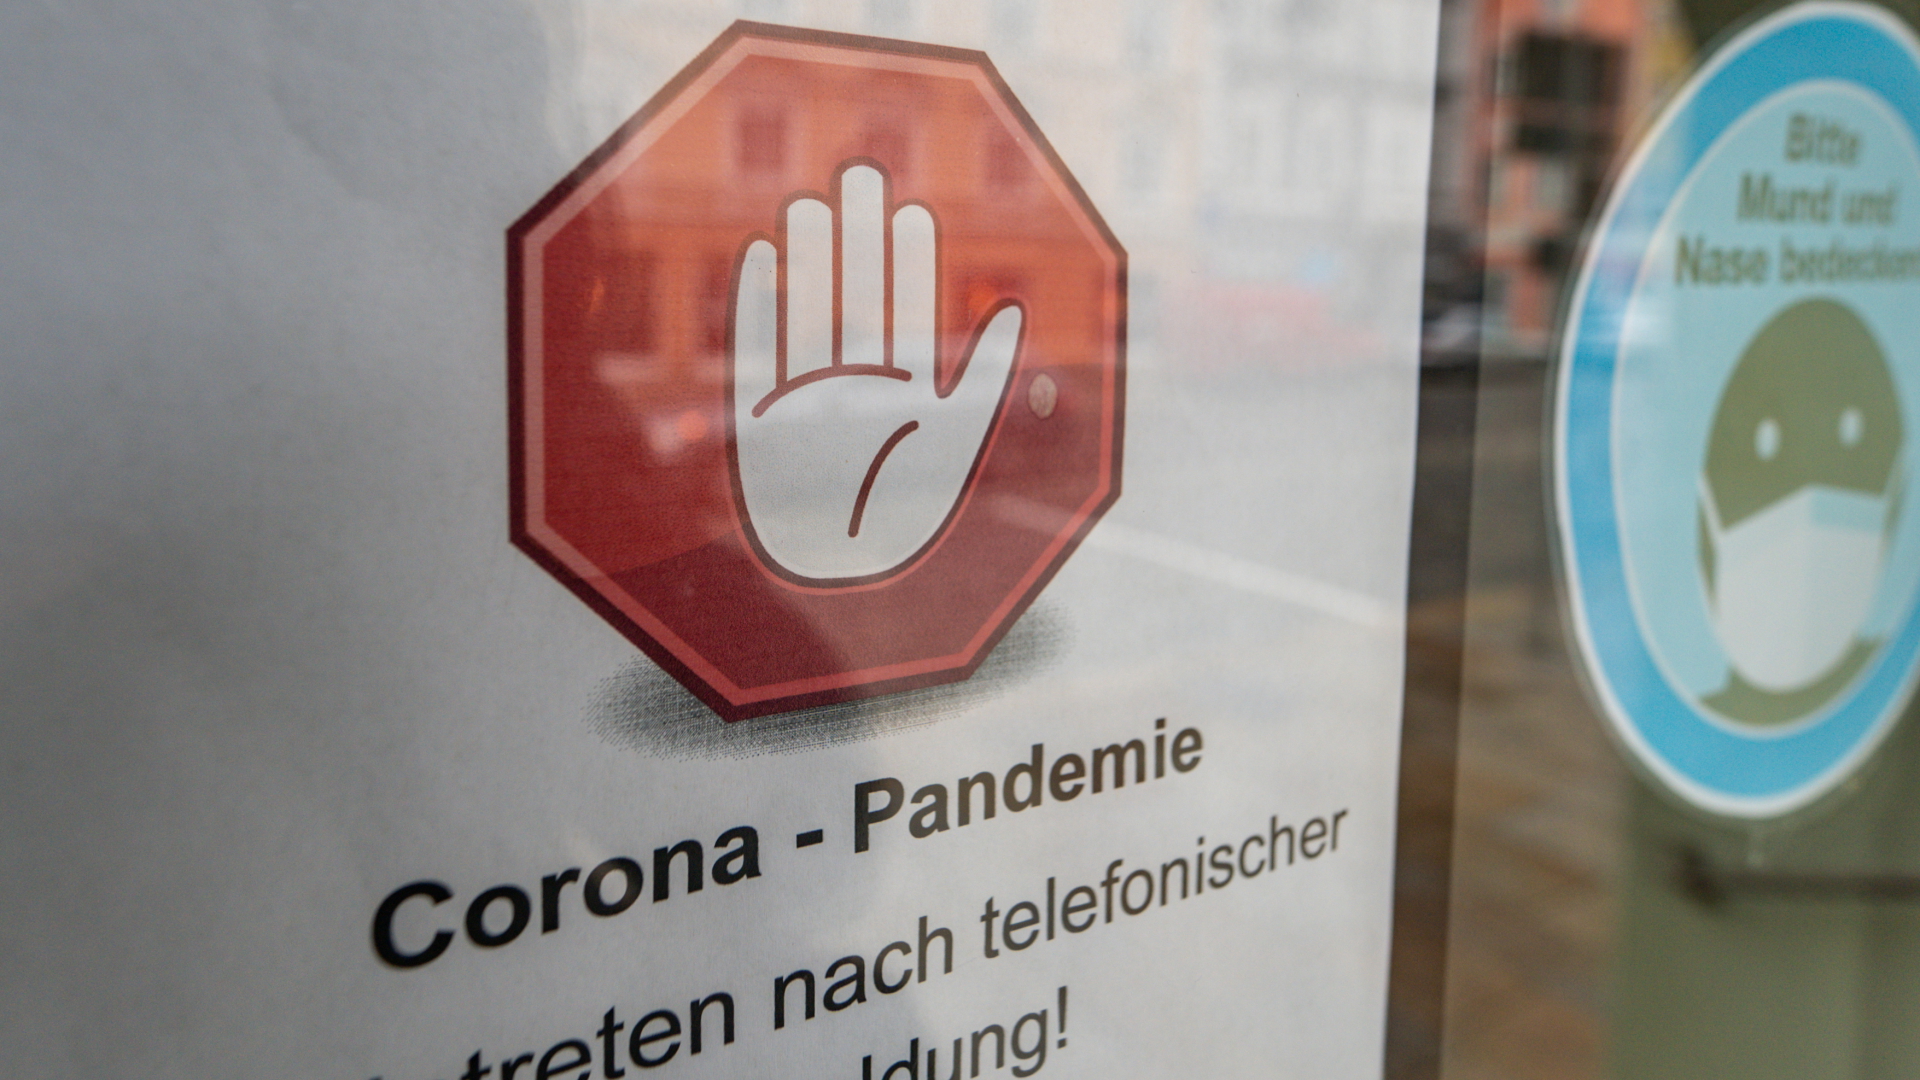 Corona-Pandemie ist Wort des Jahres 2020 | dpa